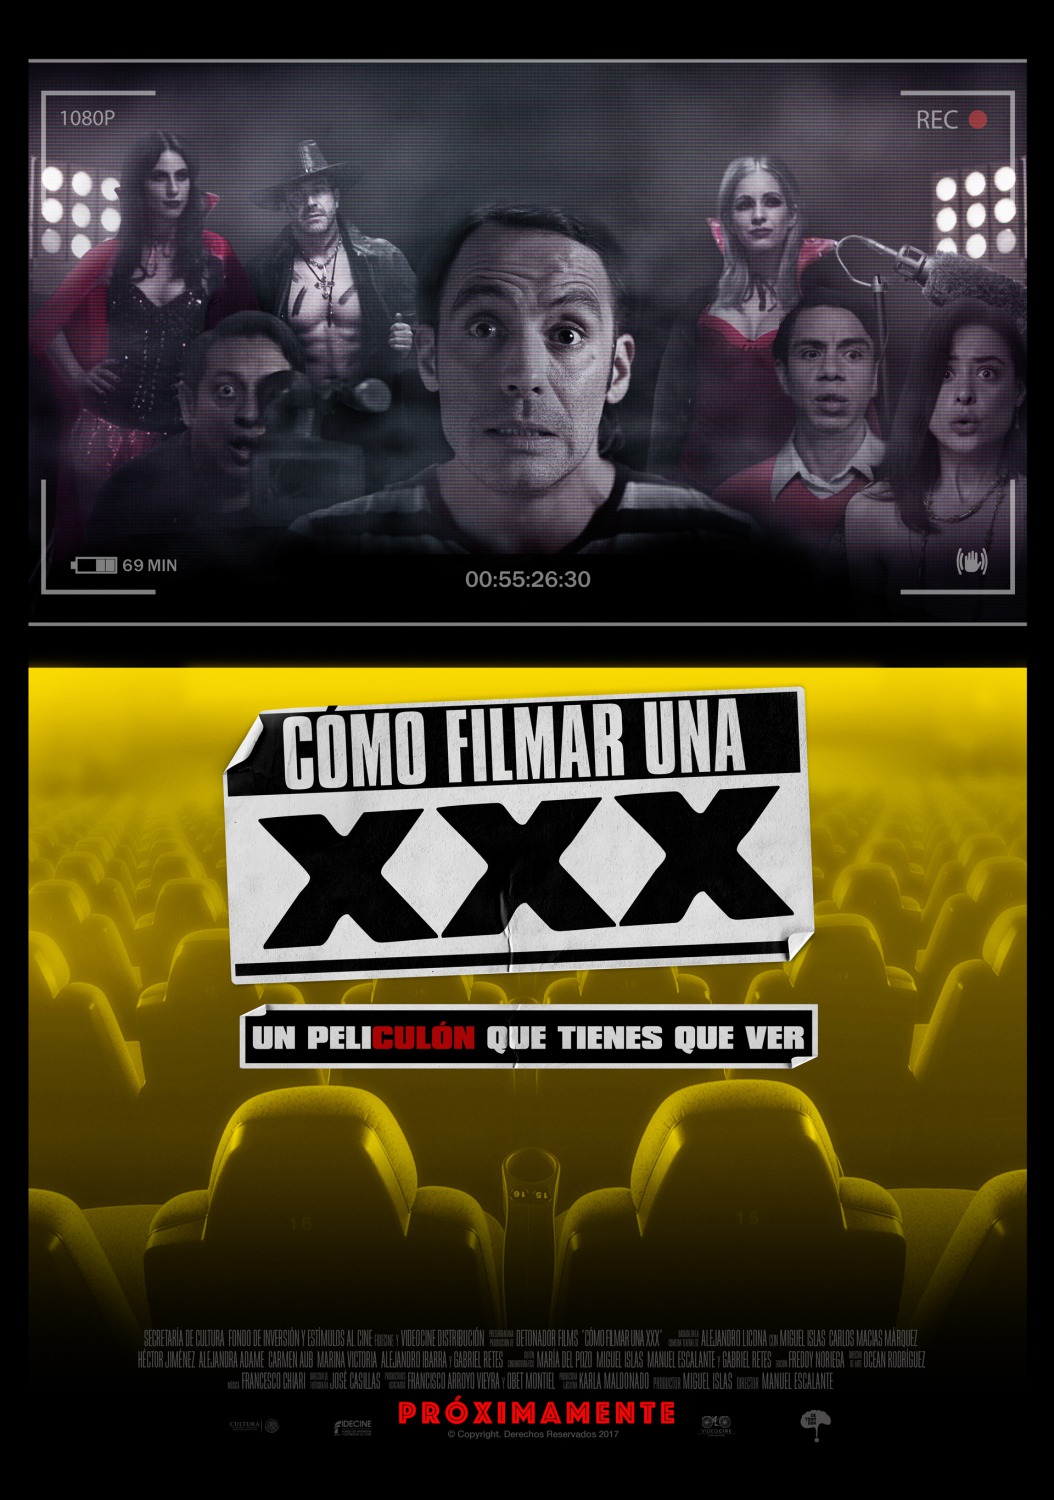 Extra Large Movie Poster Image for Cómo Filmar Una XXX 